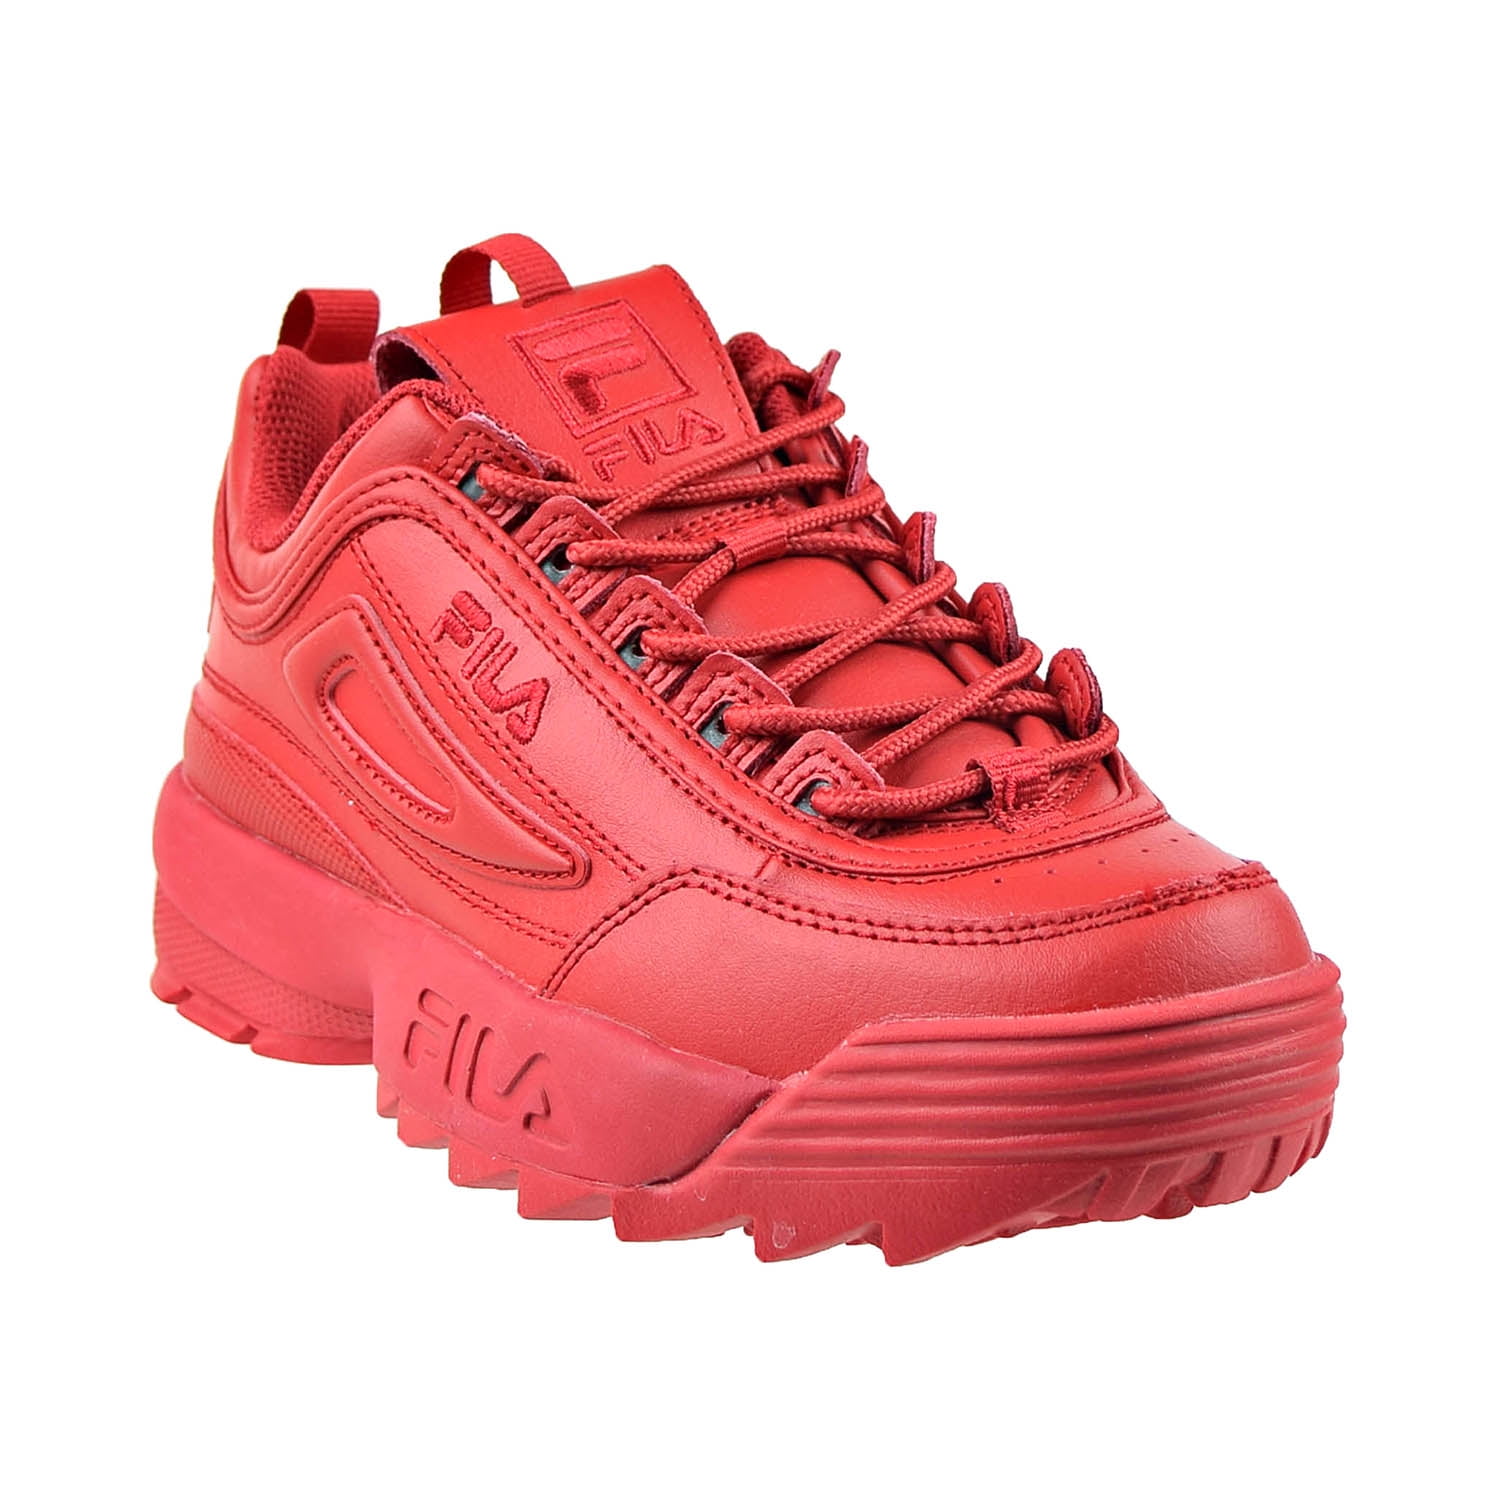 informatie bezoeker Verstrooien Fila Disruptor 2 Premium Women's Shoes Red 5xm01763-600 - Walmart.com